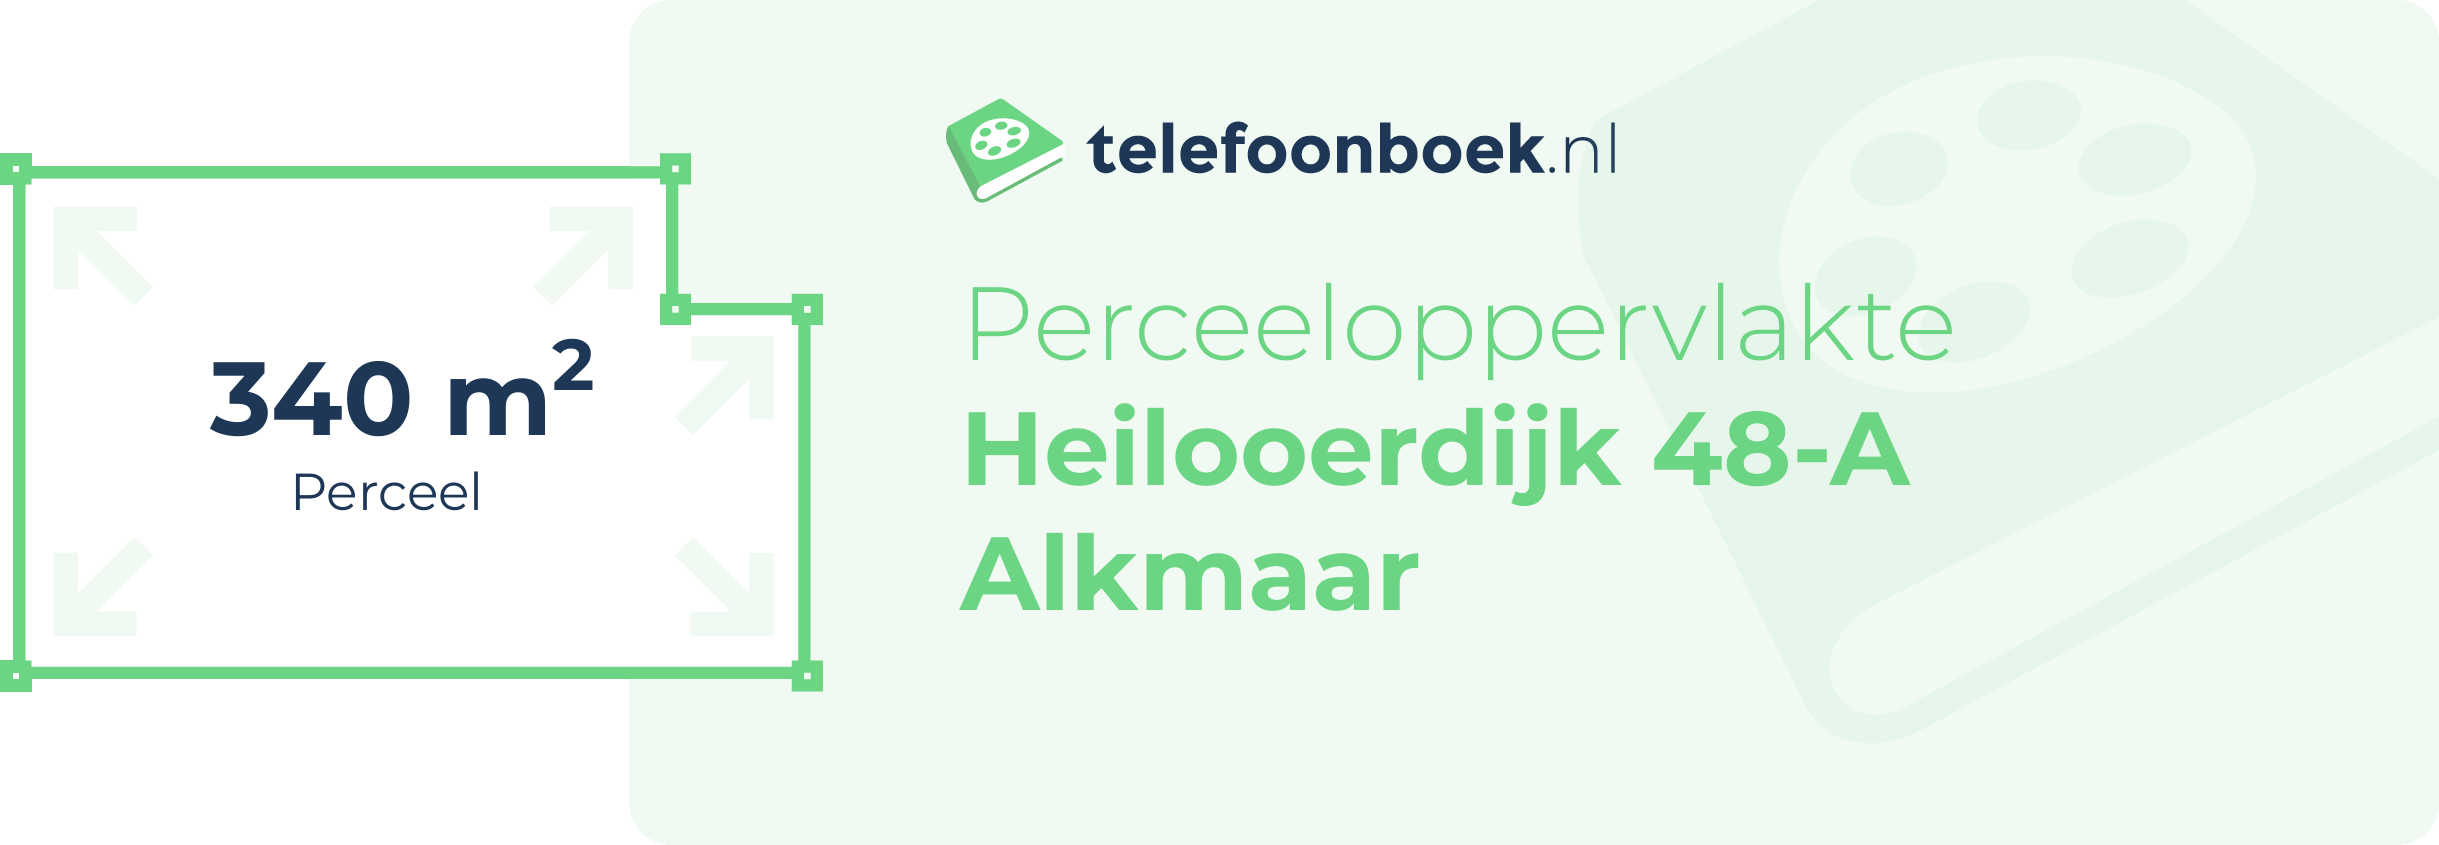 Perceeloppervlakte Heilooerdijk 48-A Alkmaar